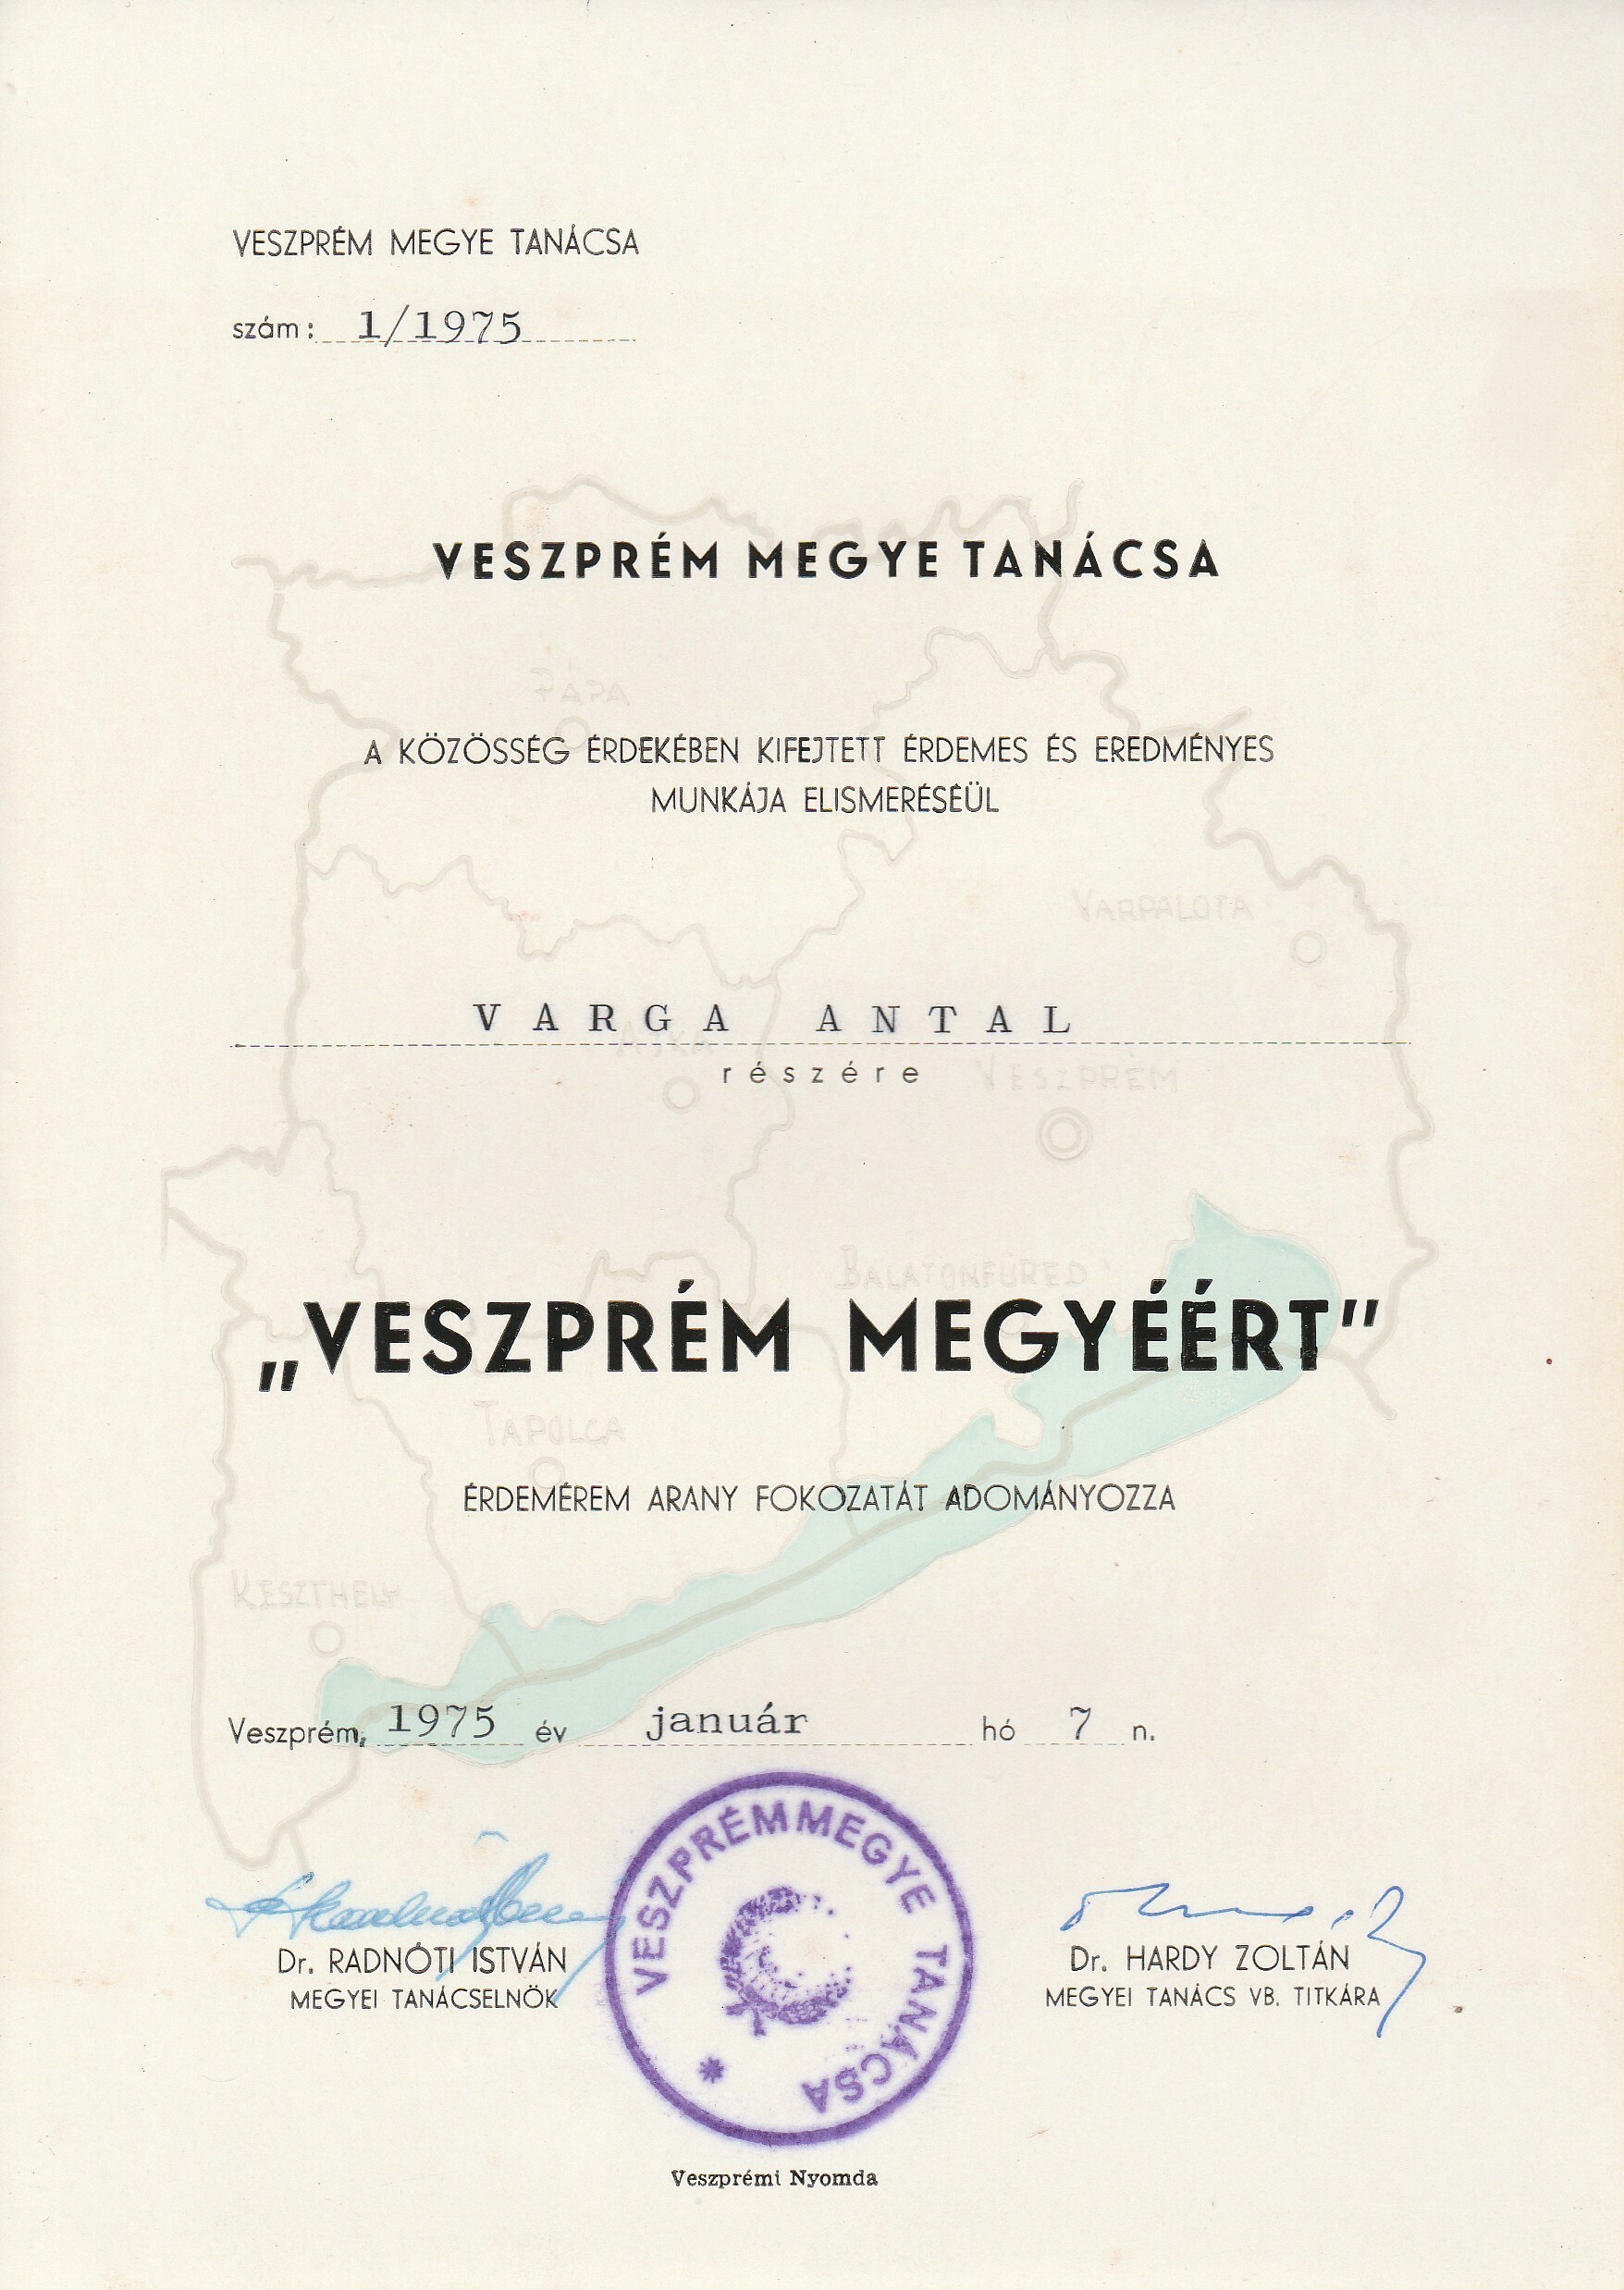 Veszprém Megyéért Érdemérem adományozó oklevele (Tapolcai Városi Múzeum CC BY-NC-SA)